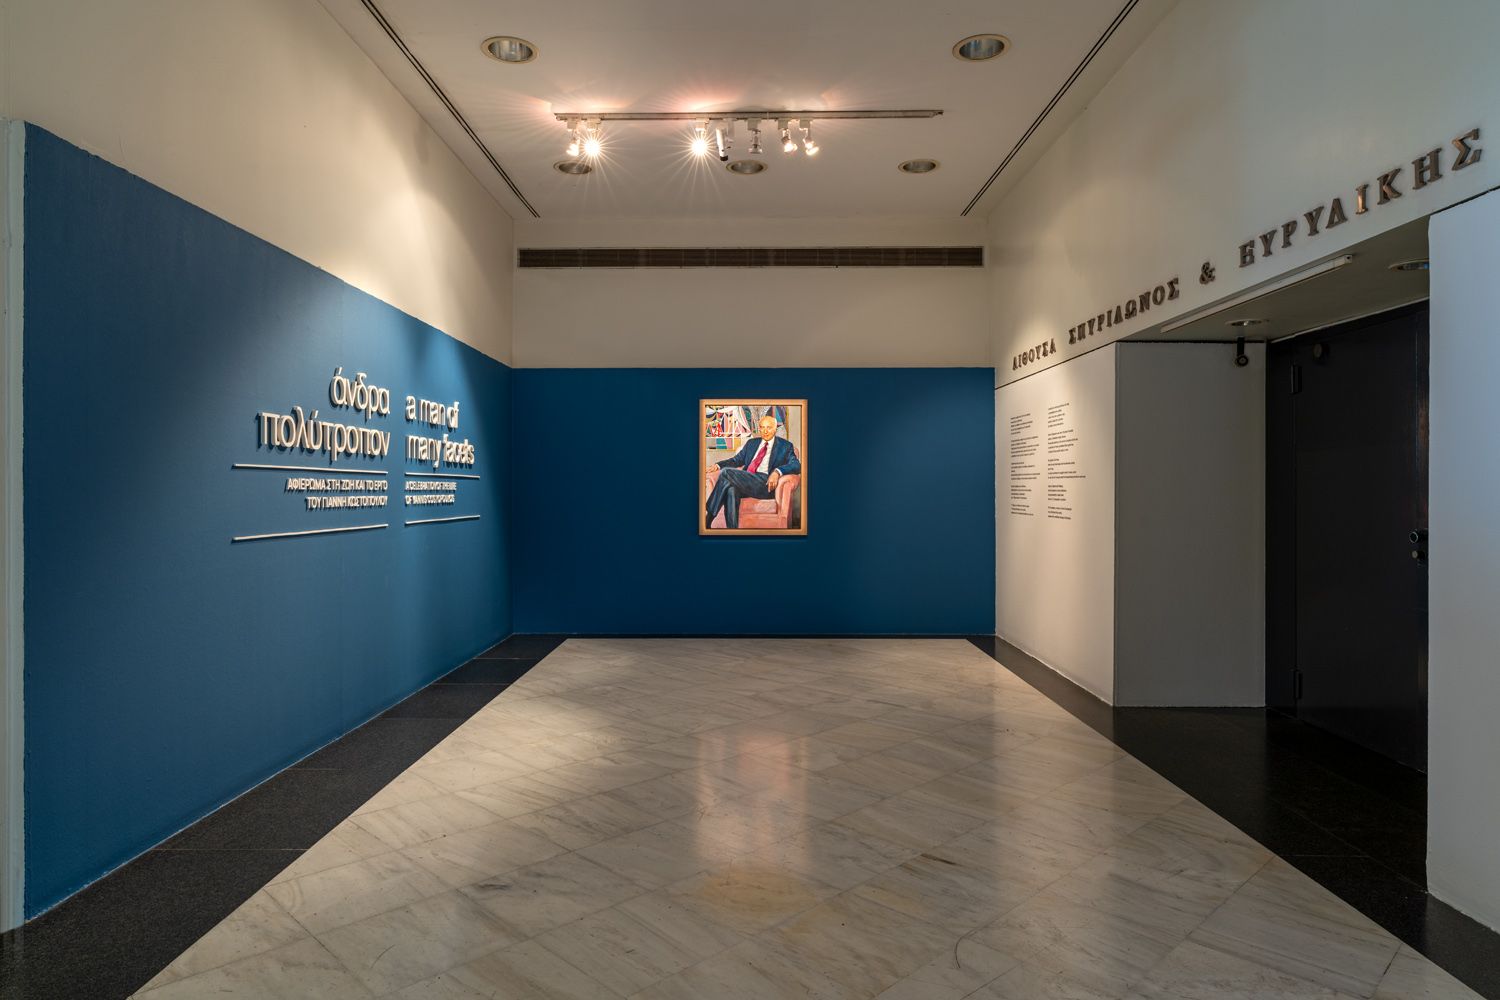 Το πορτρέτο το Γιάννη Κωστόπουλου στην είσοδο της αίθουσας περιοδικών εκθέσεων Σπυρίδωνος και Ευρυδίκης Κωστοπούλου στο Μουσείο Μπενάκη